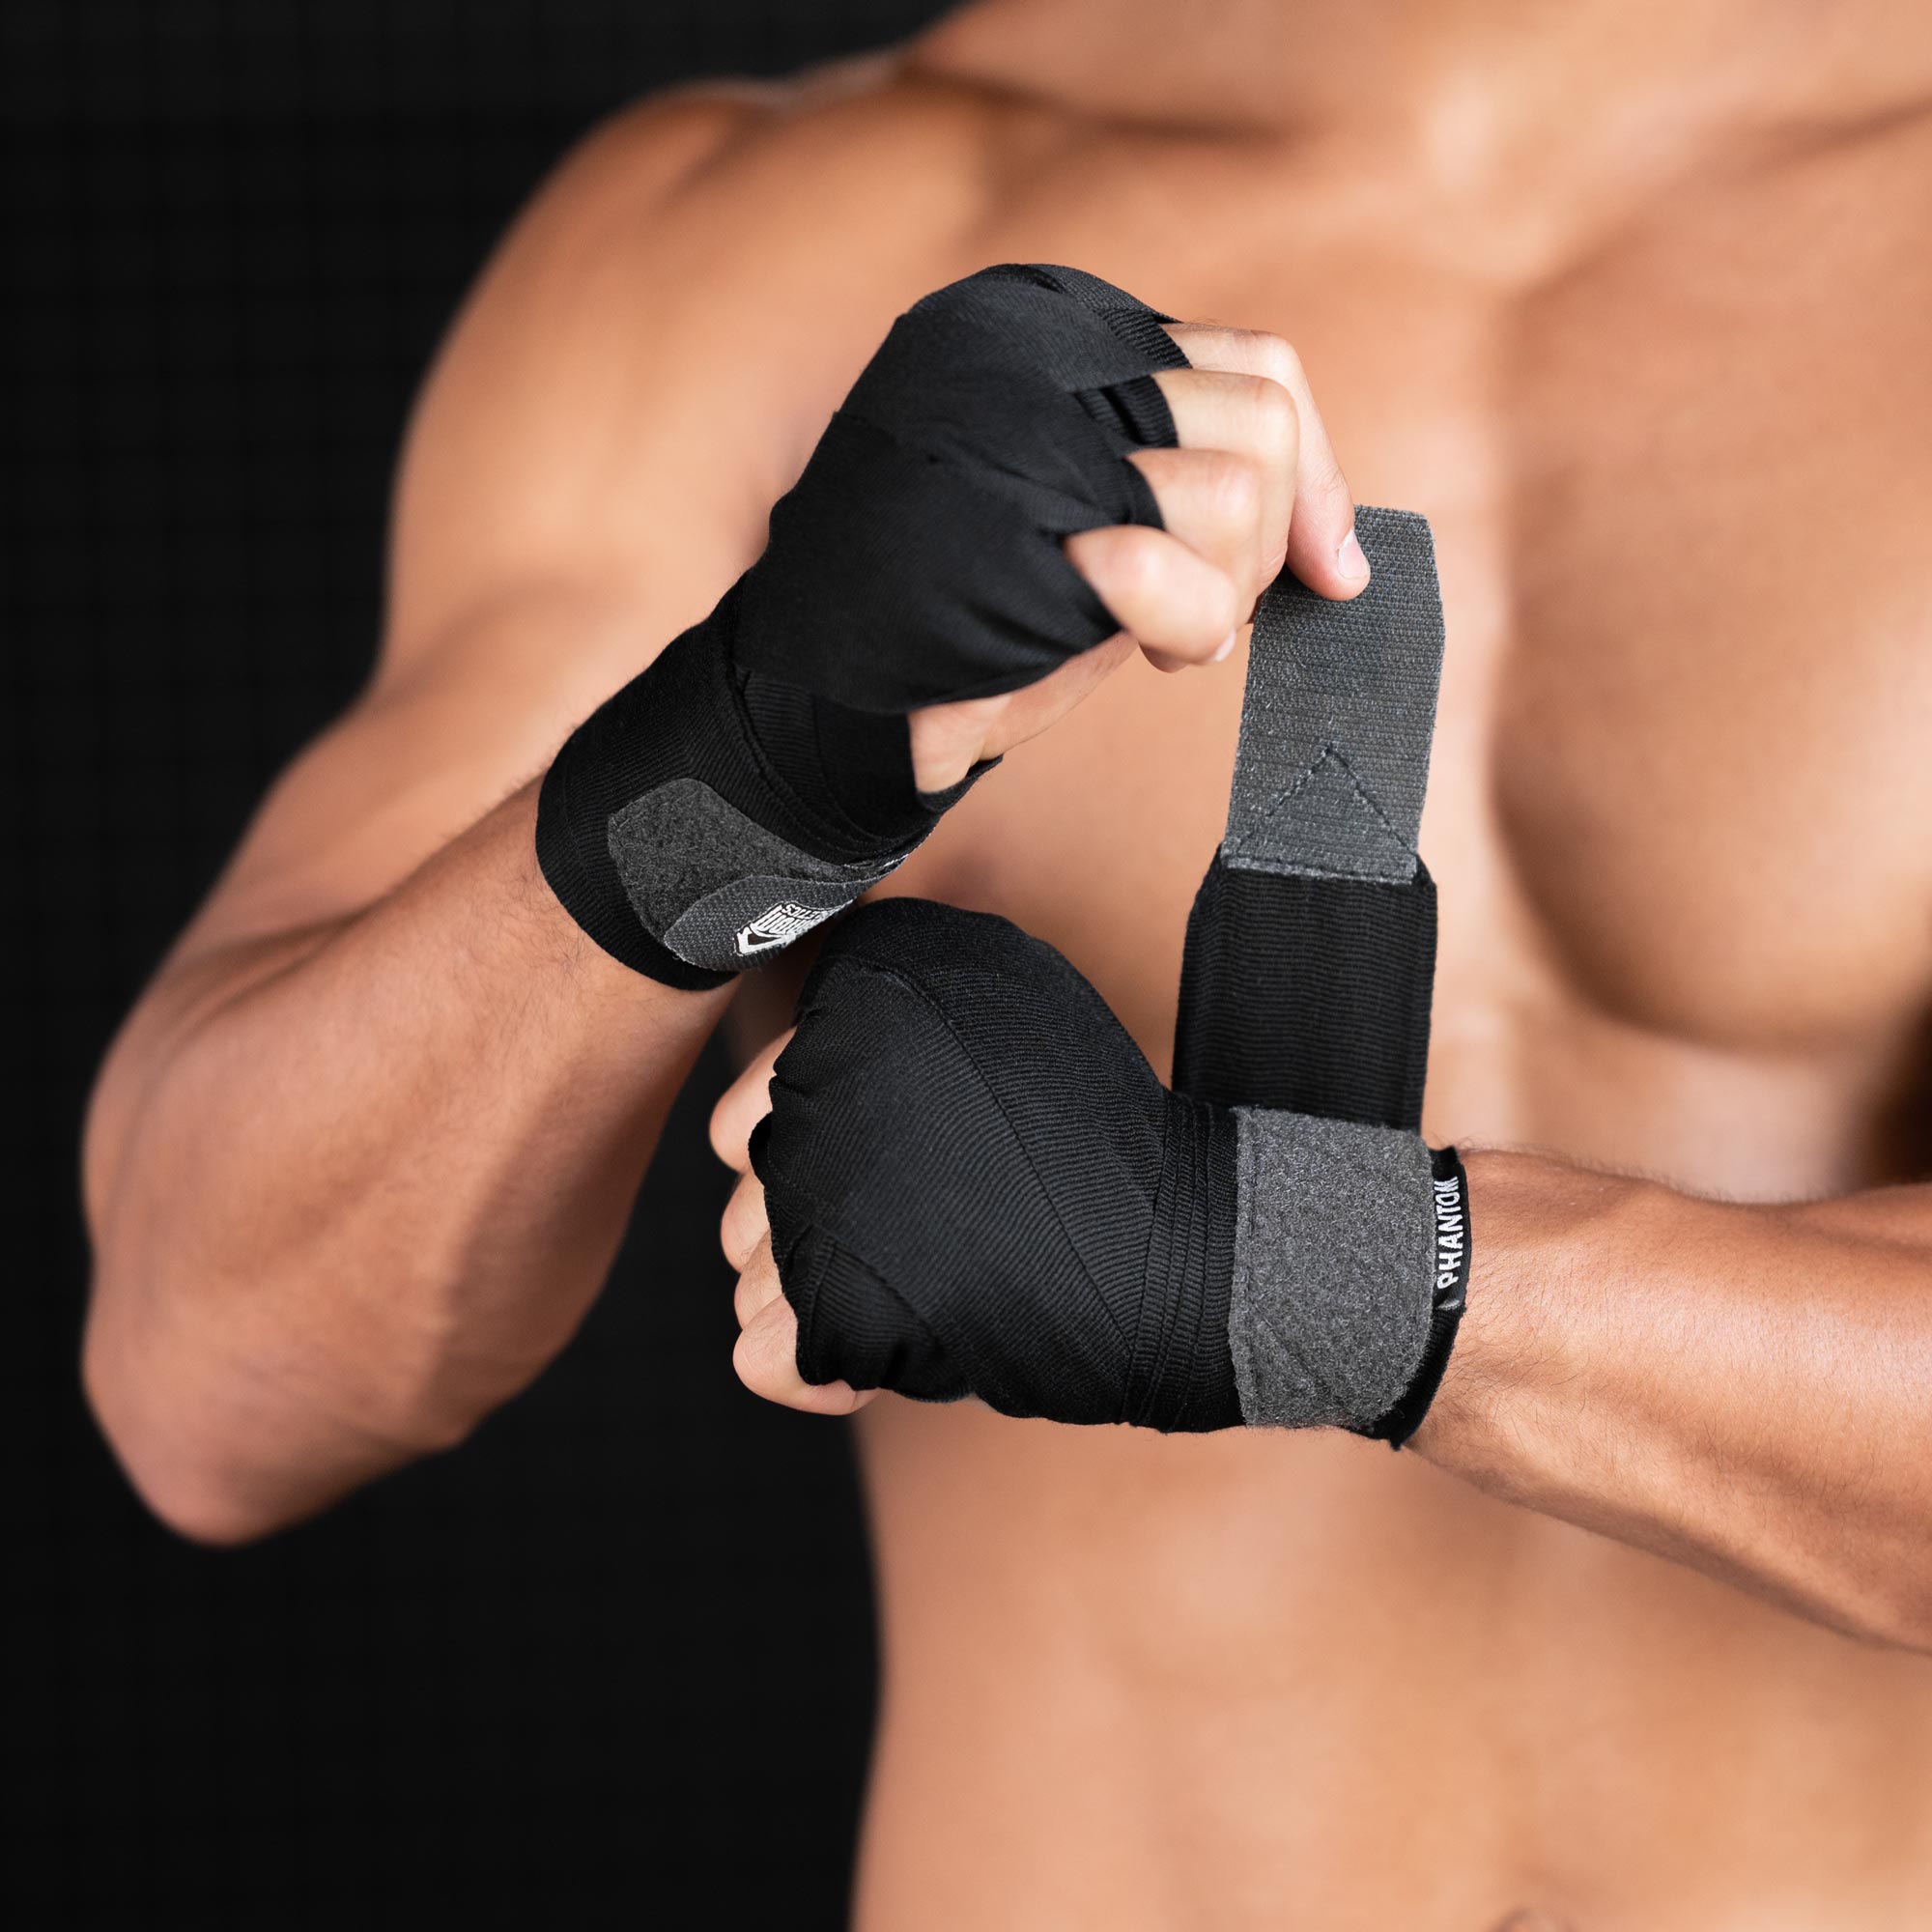 Bandage Hands Boxing, Bandage Boxing Taekwondo